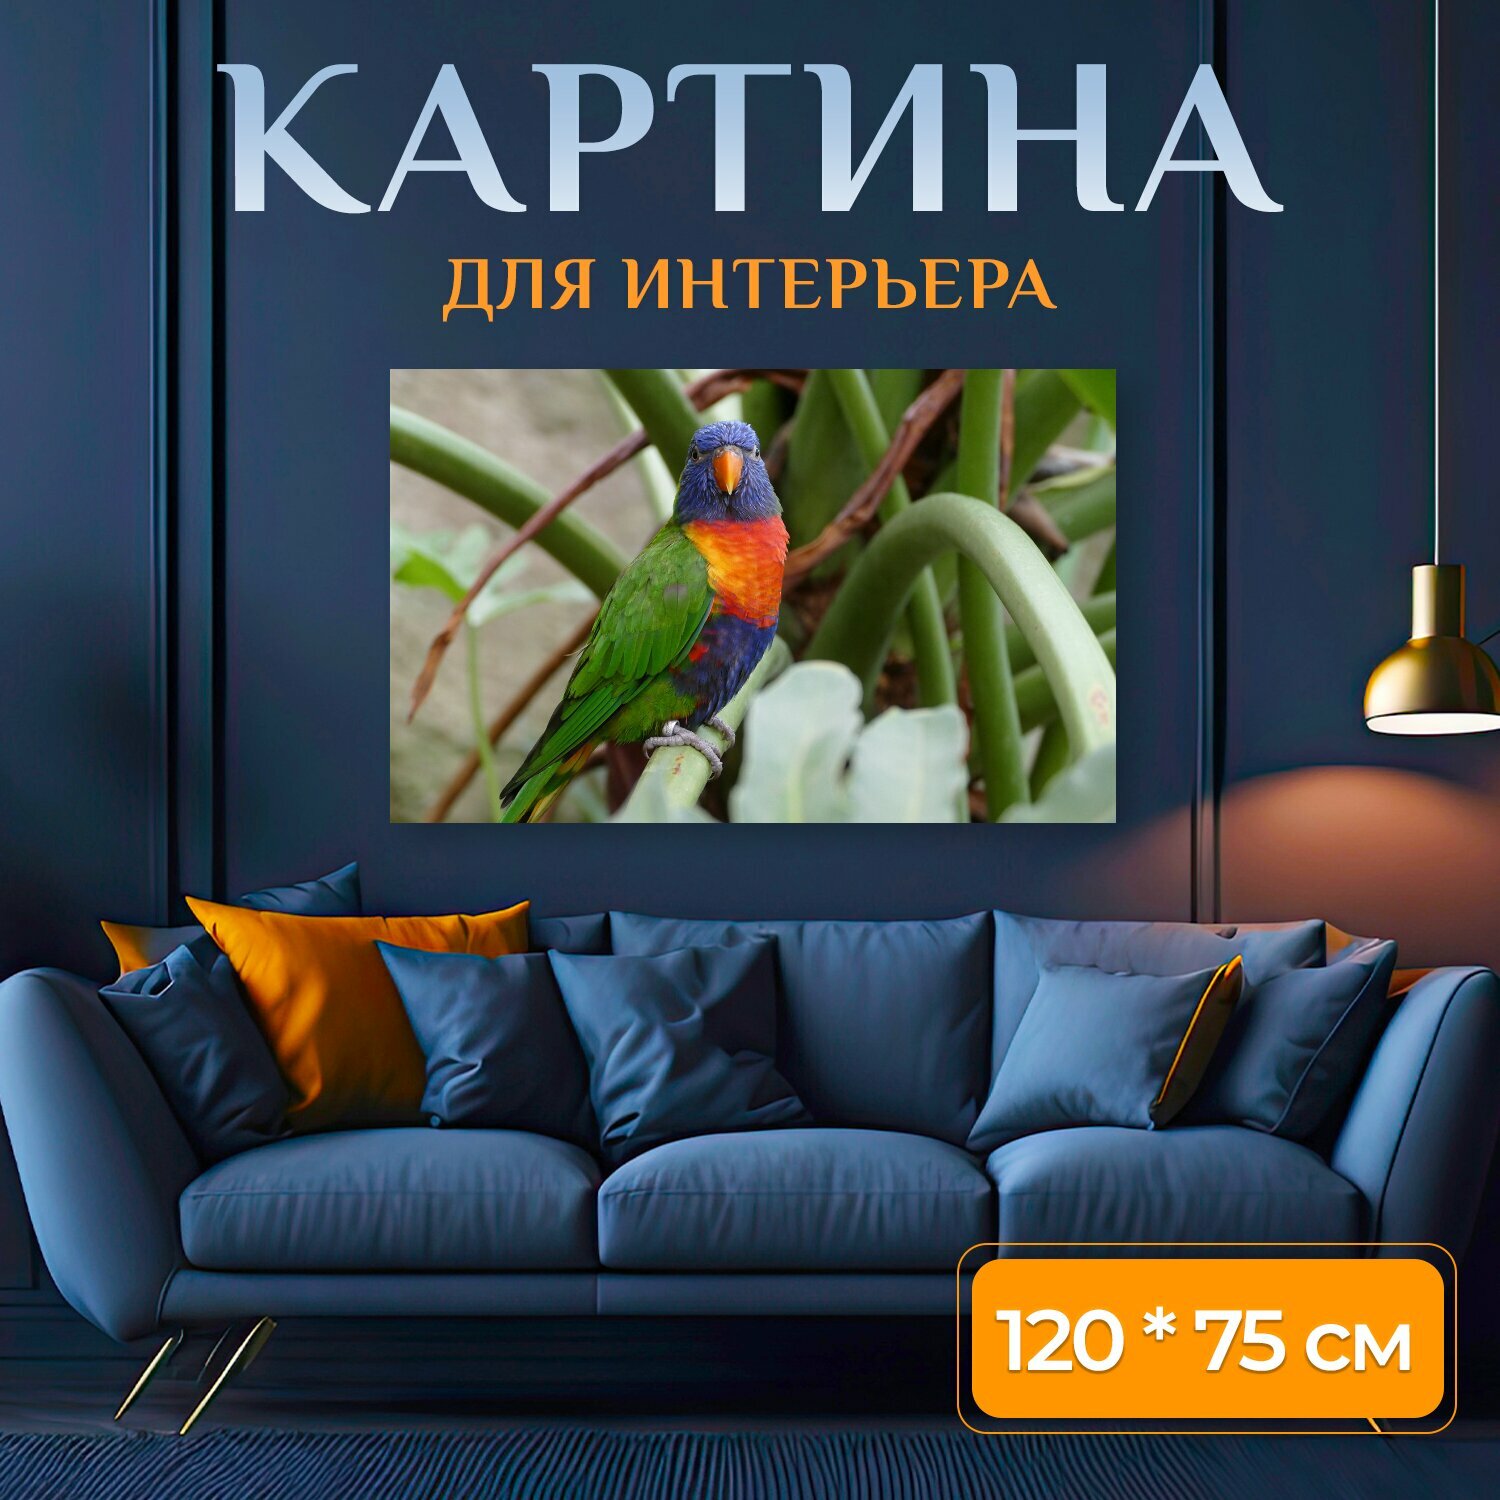 Картина на холсте "Лорикет птица попугай" на подрамнике 120х75 см. для интерьера